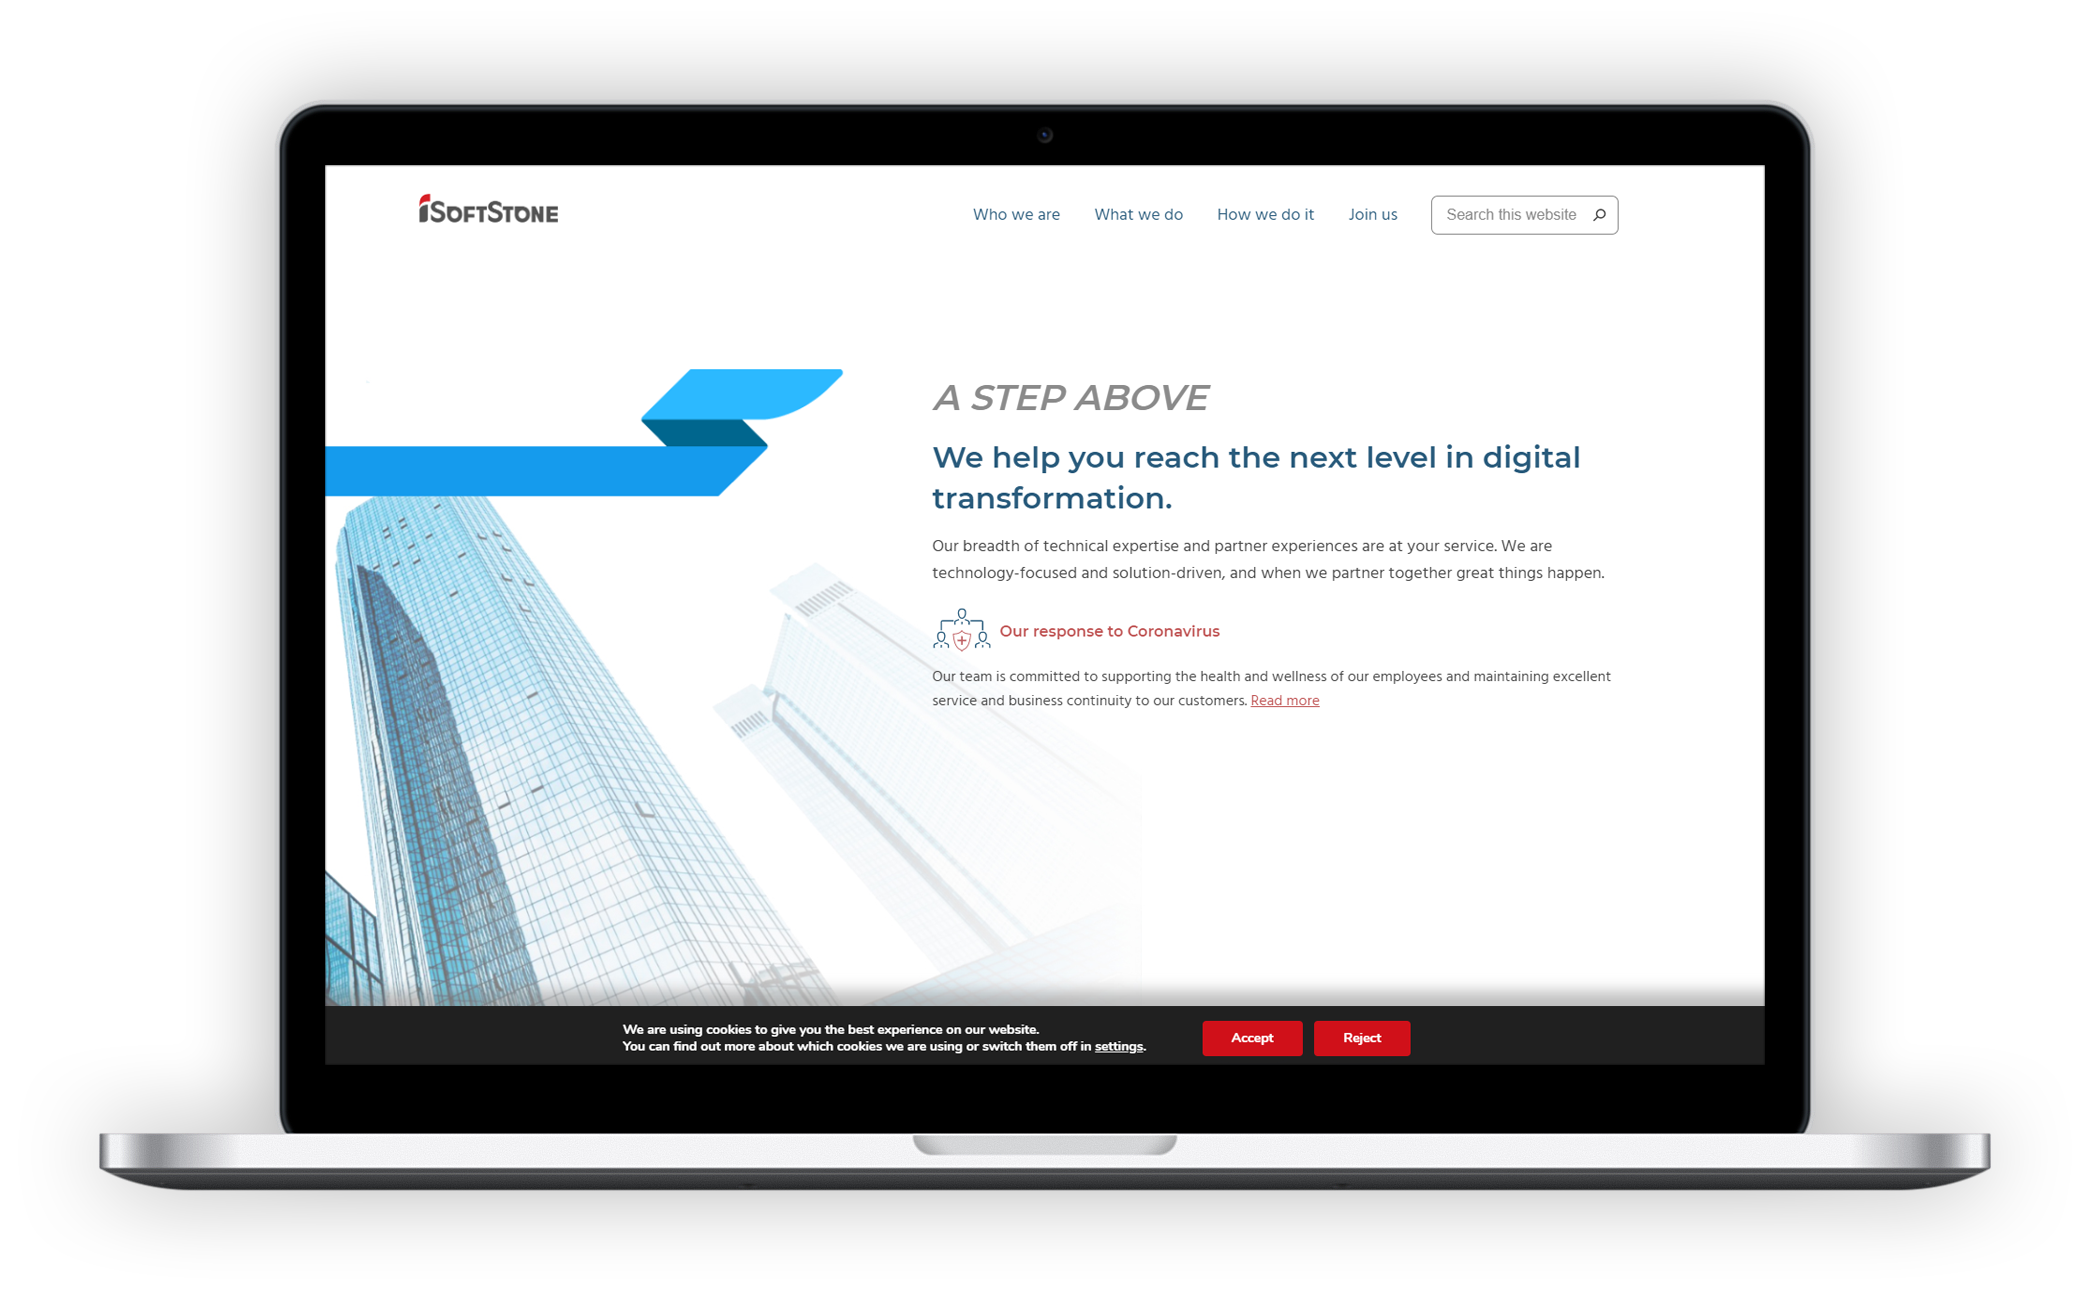 iSoftStone company website revamp